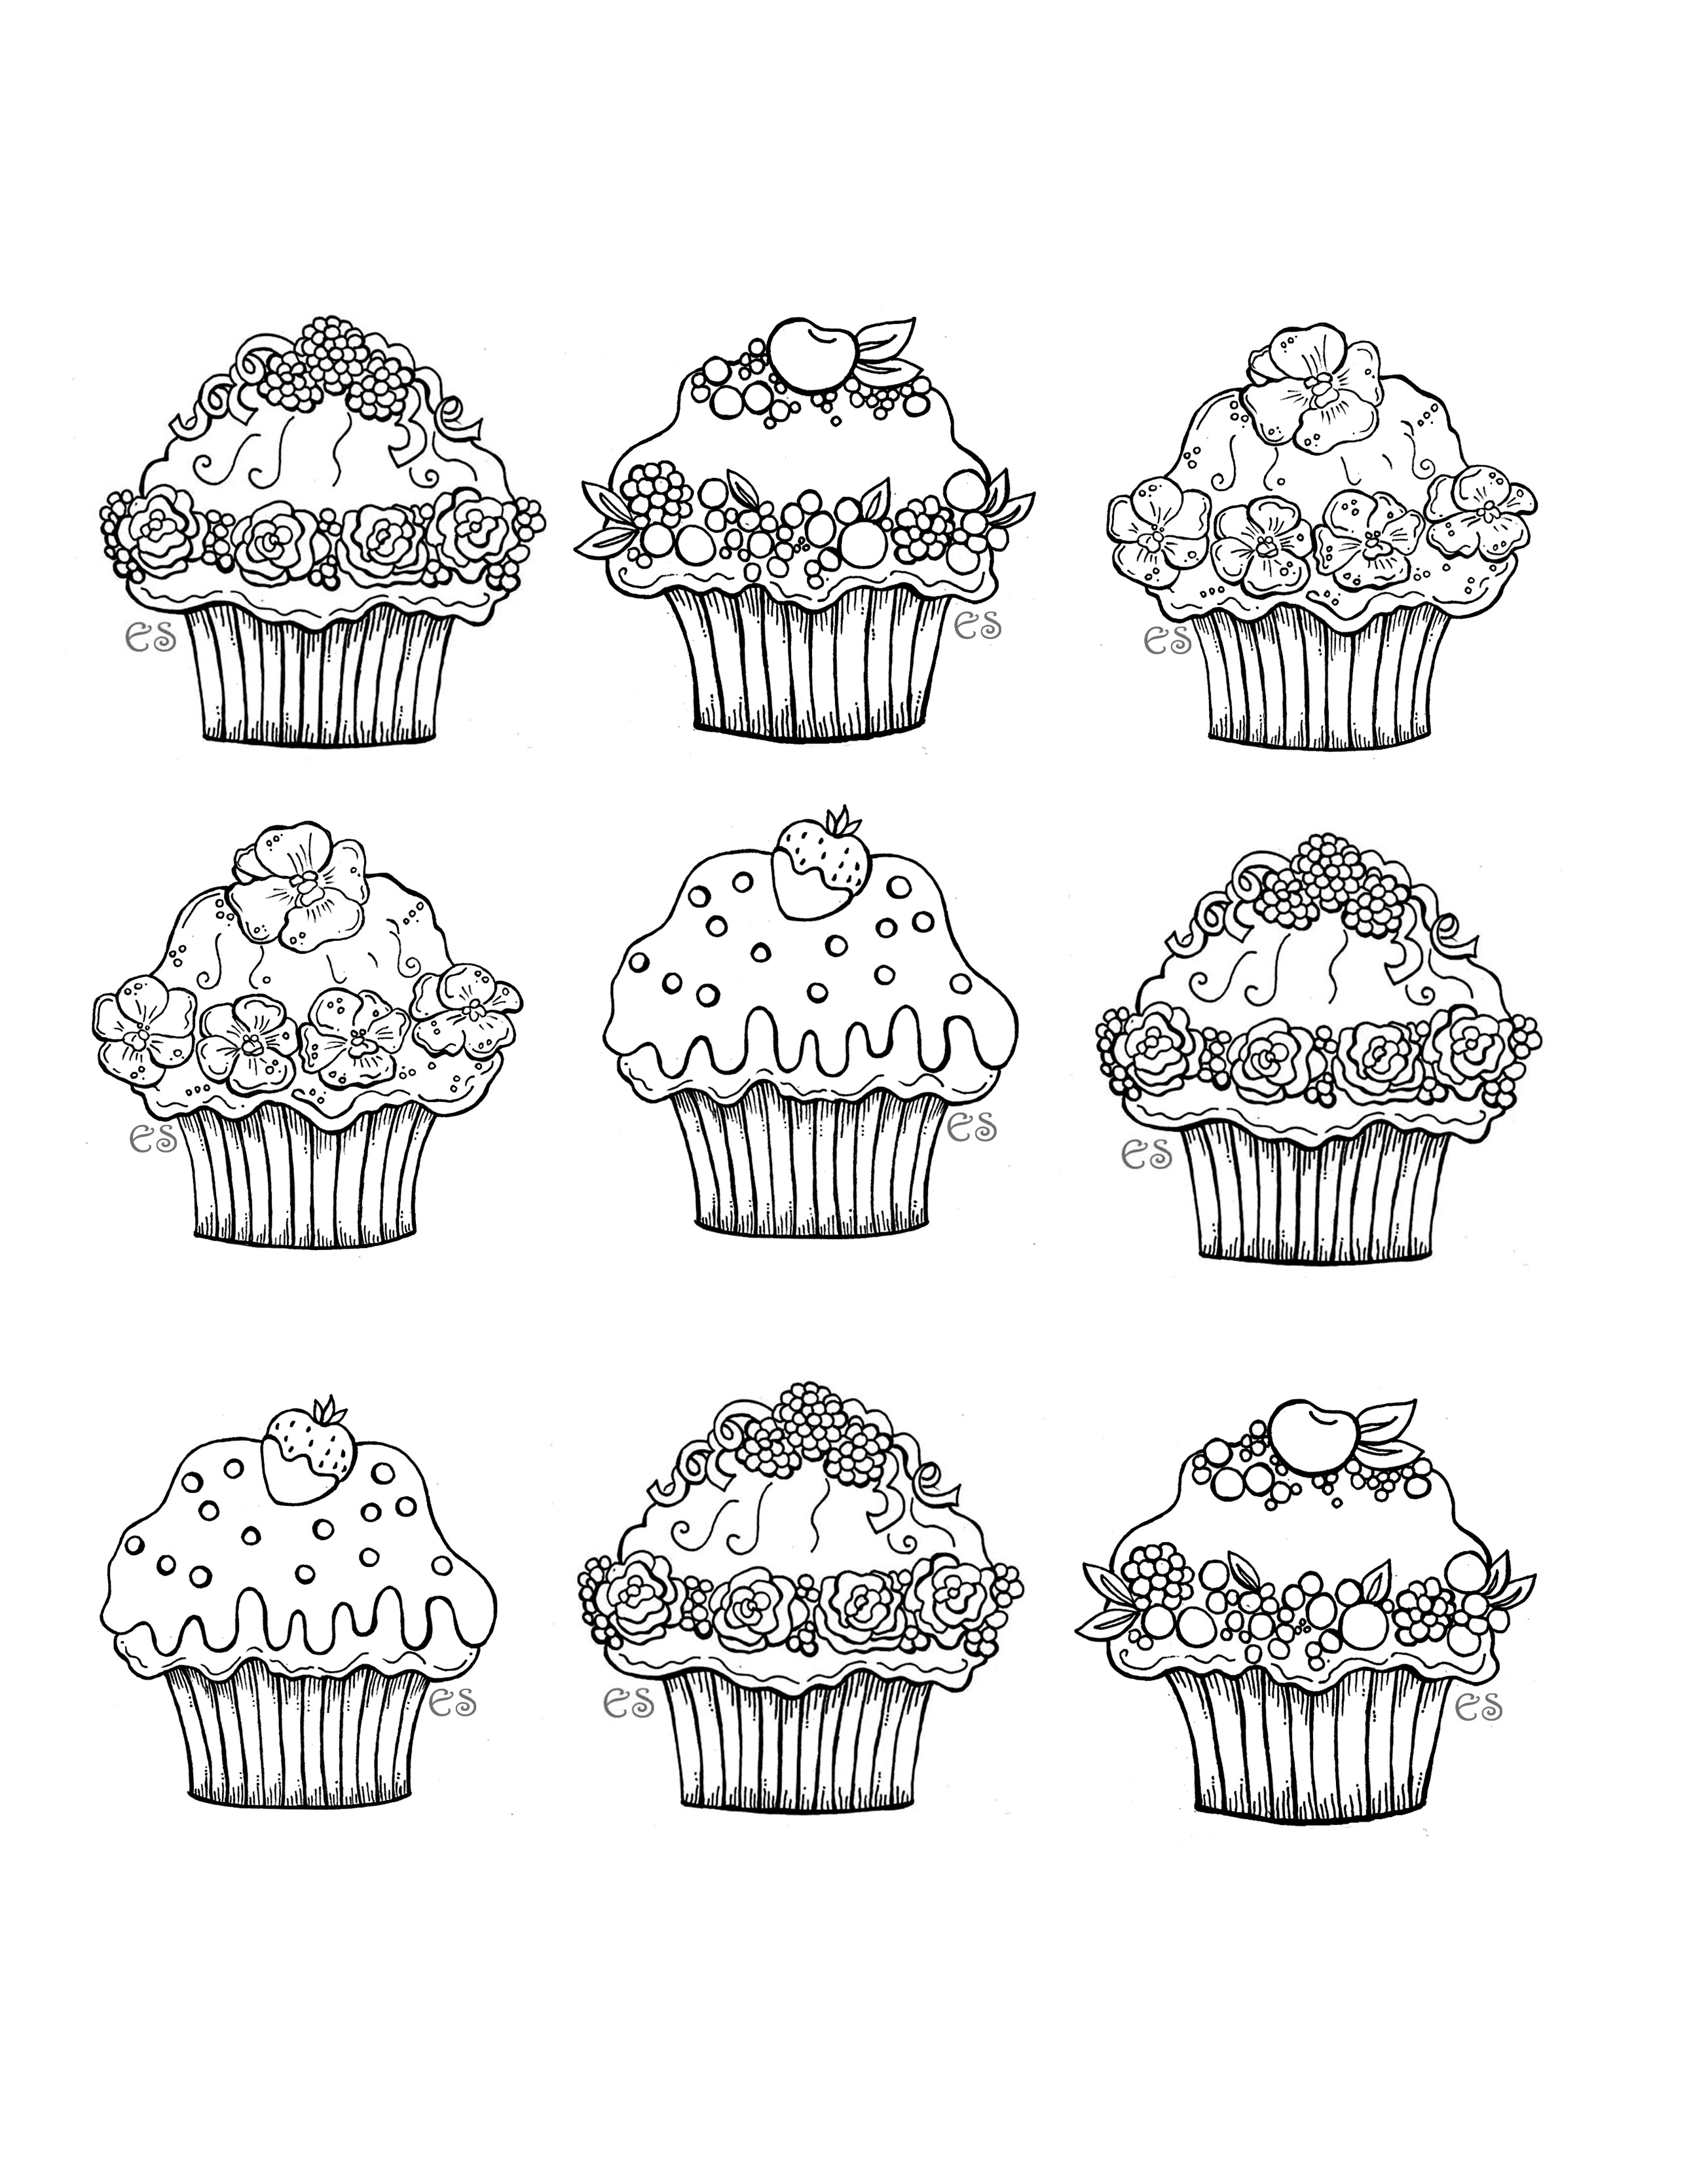 Six cute cupcakes